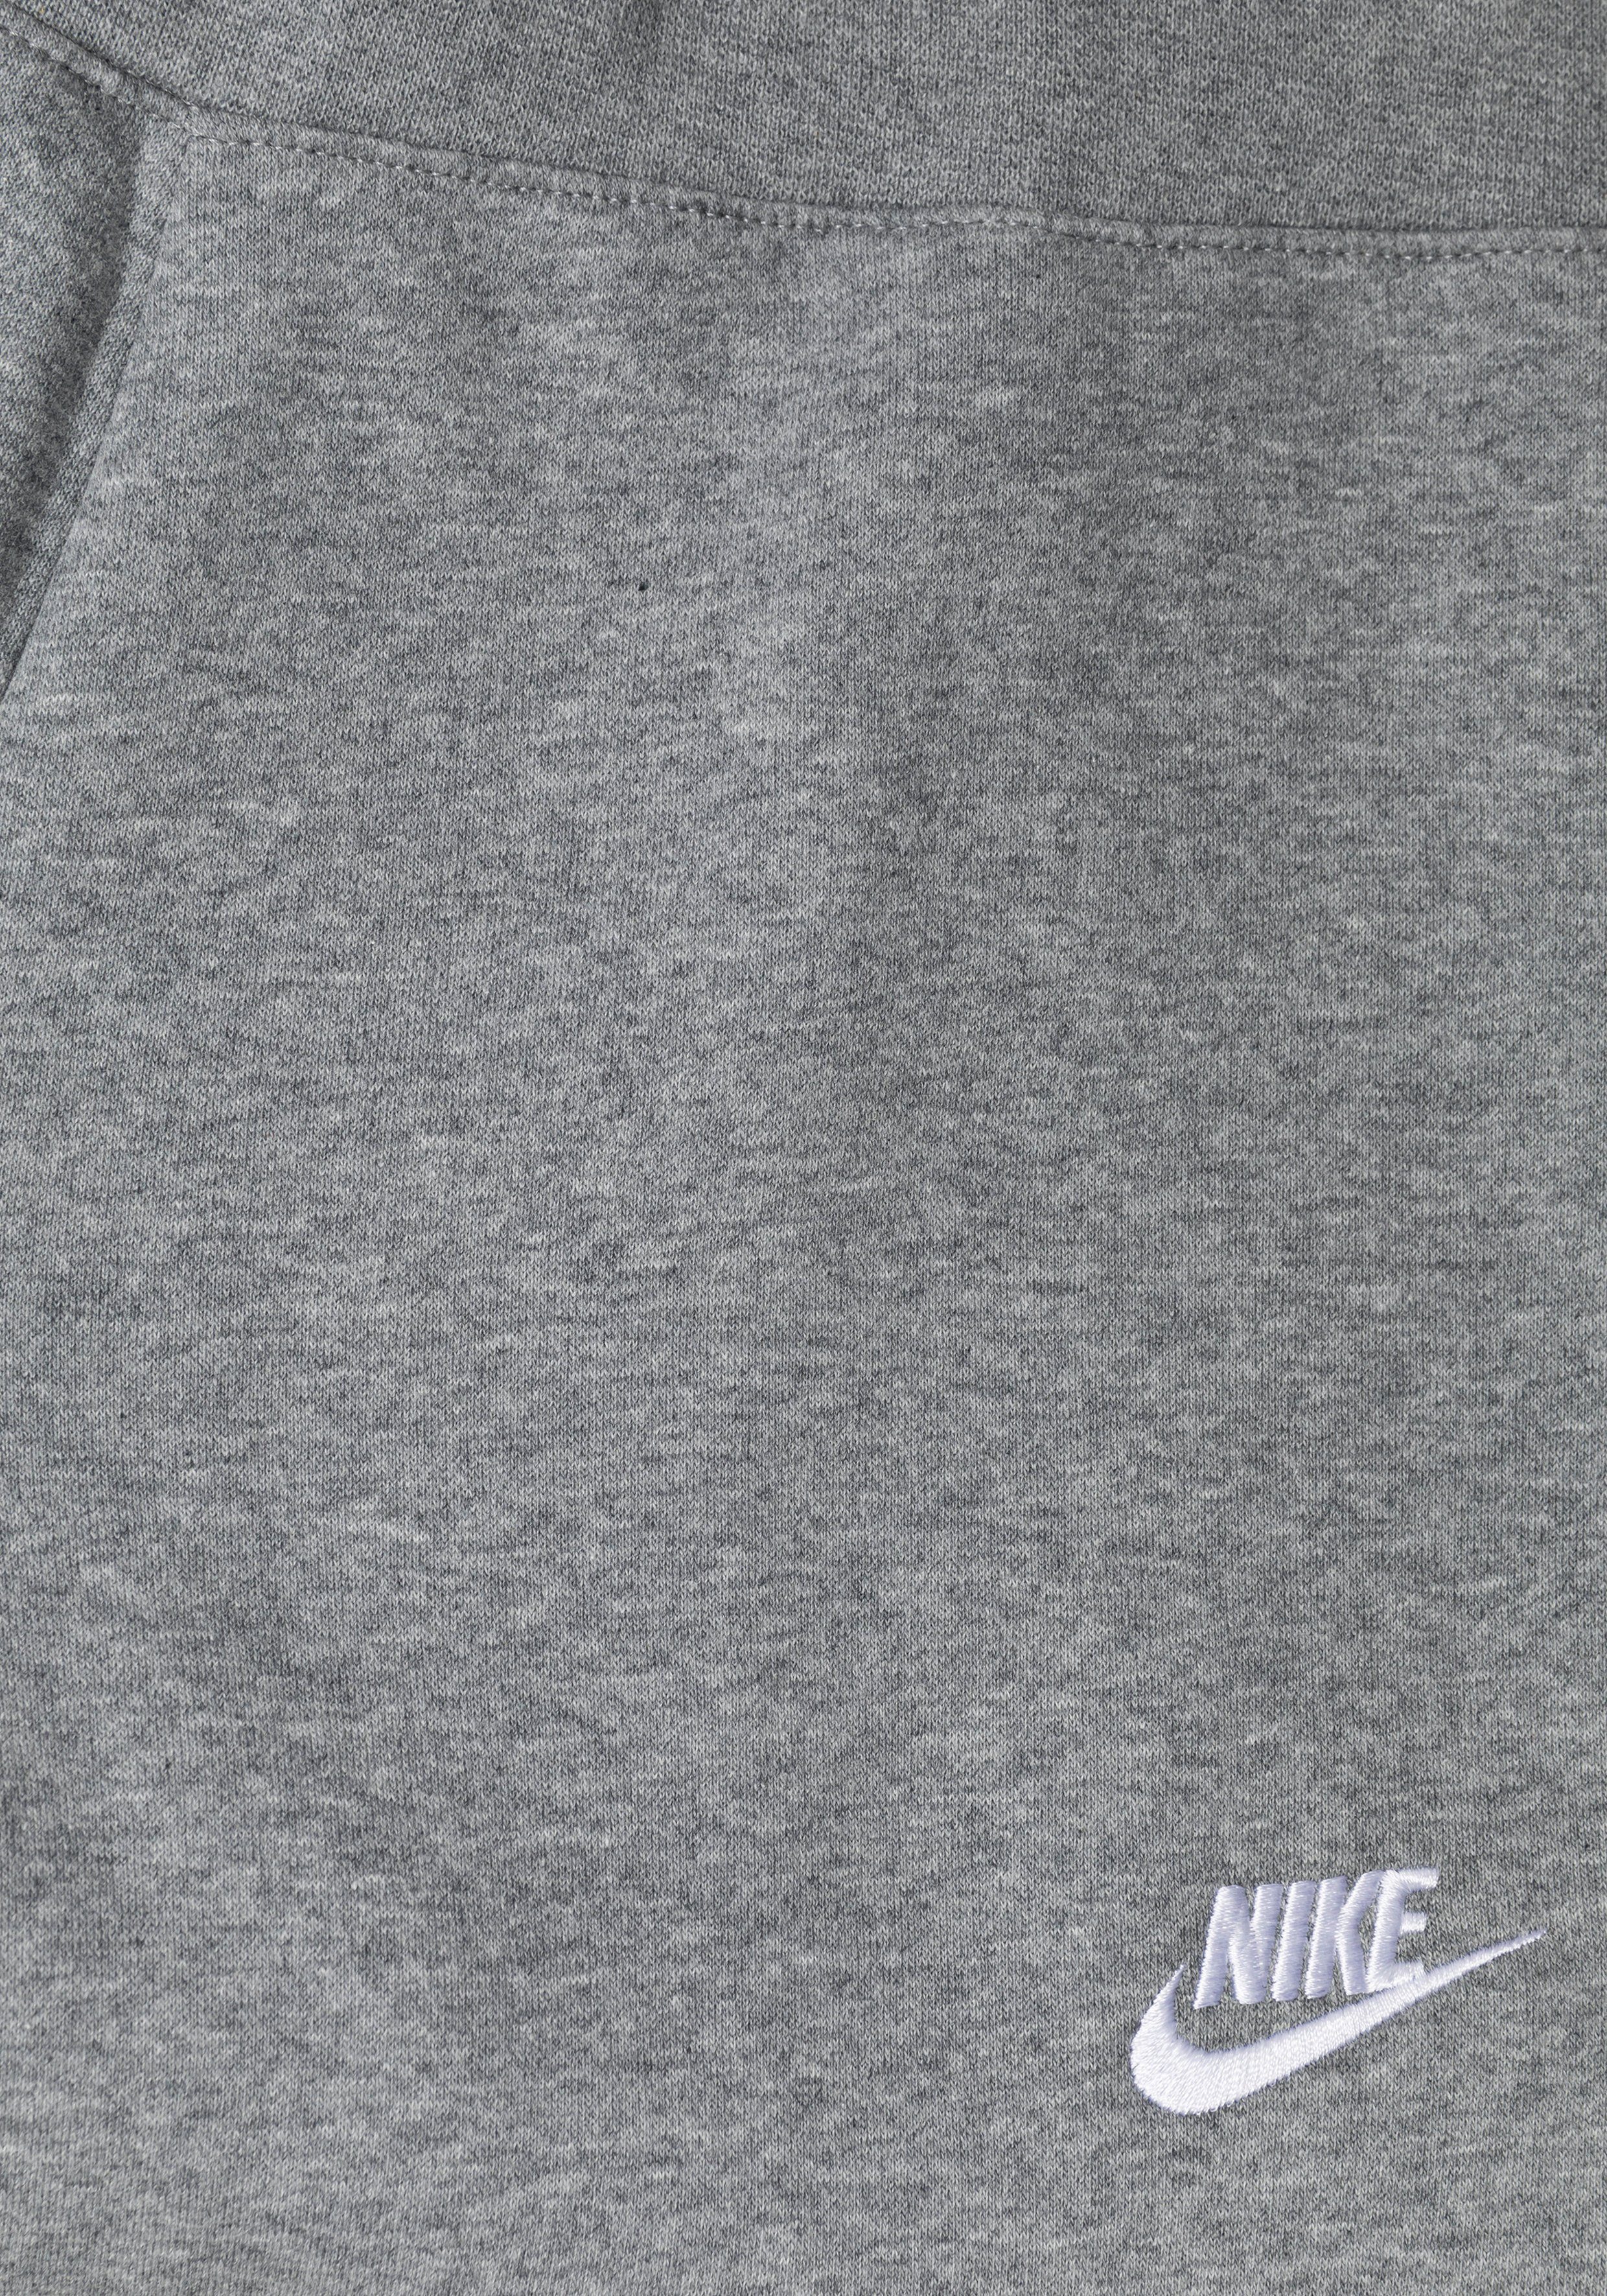 Nike Fleece Kids' Jogginghose (Girls) Club Big Pants grau-meliert Sportswear